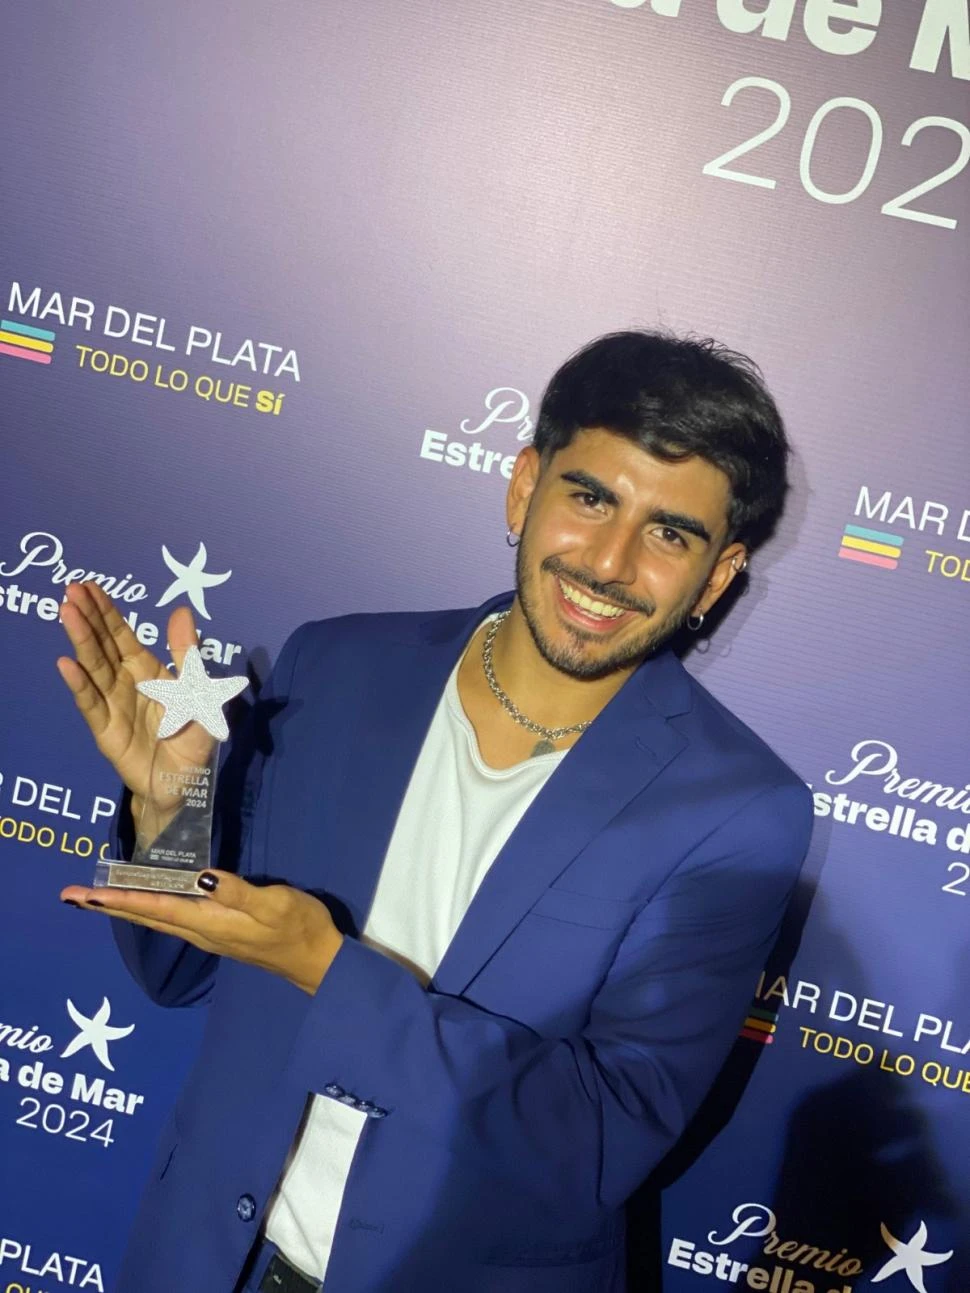 REVELACIÓN. Leonardo Gallardo junto al premio Estrella de Mar.